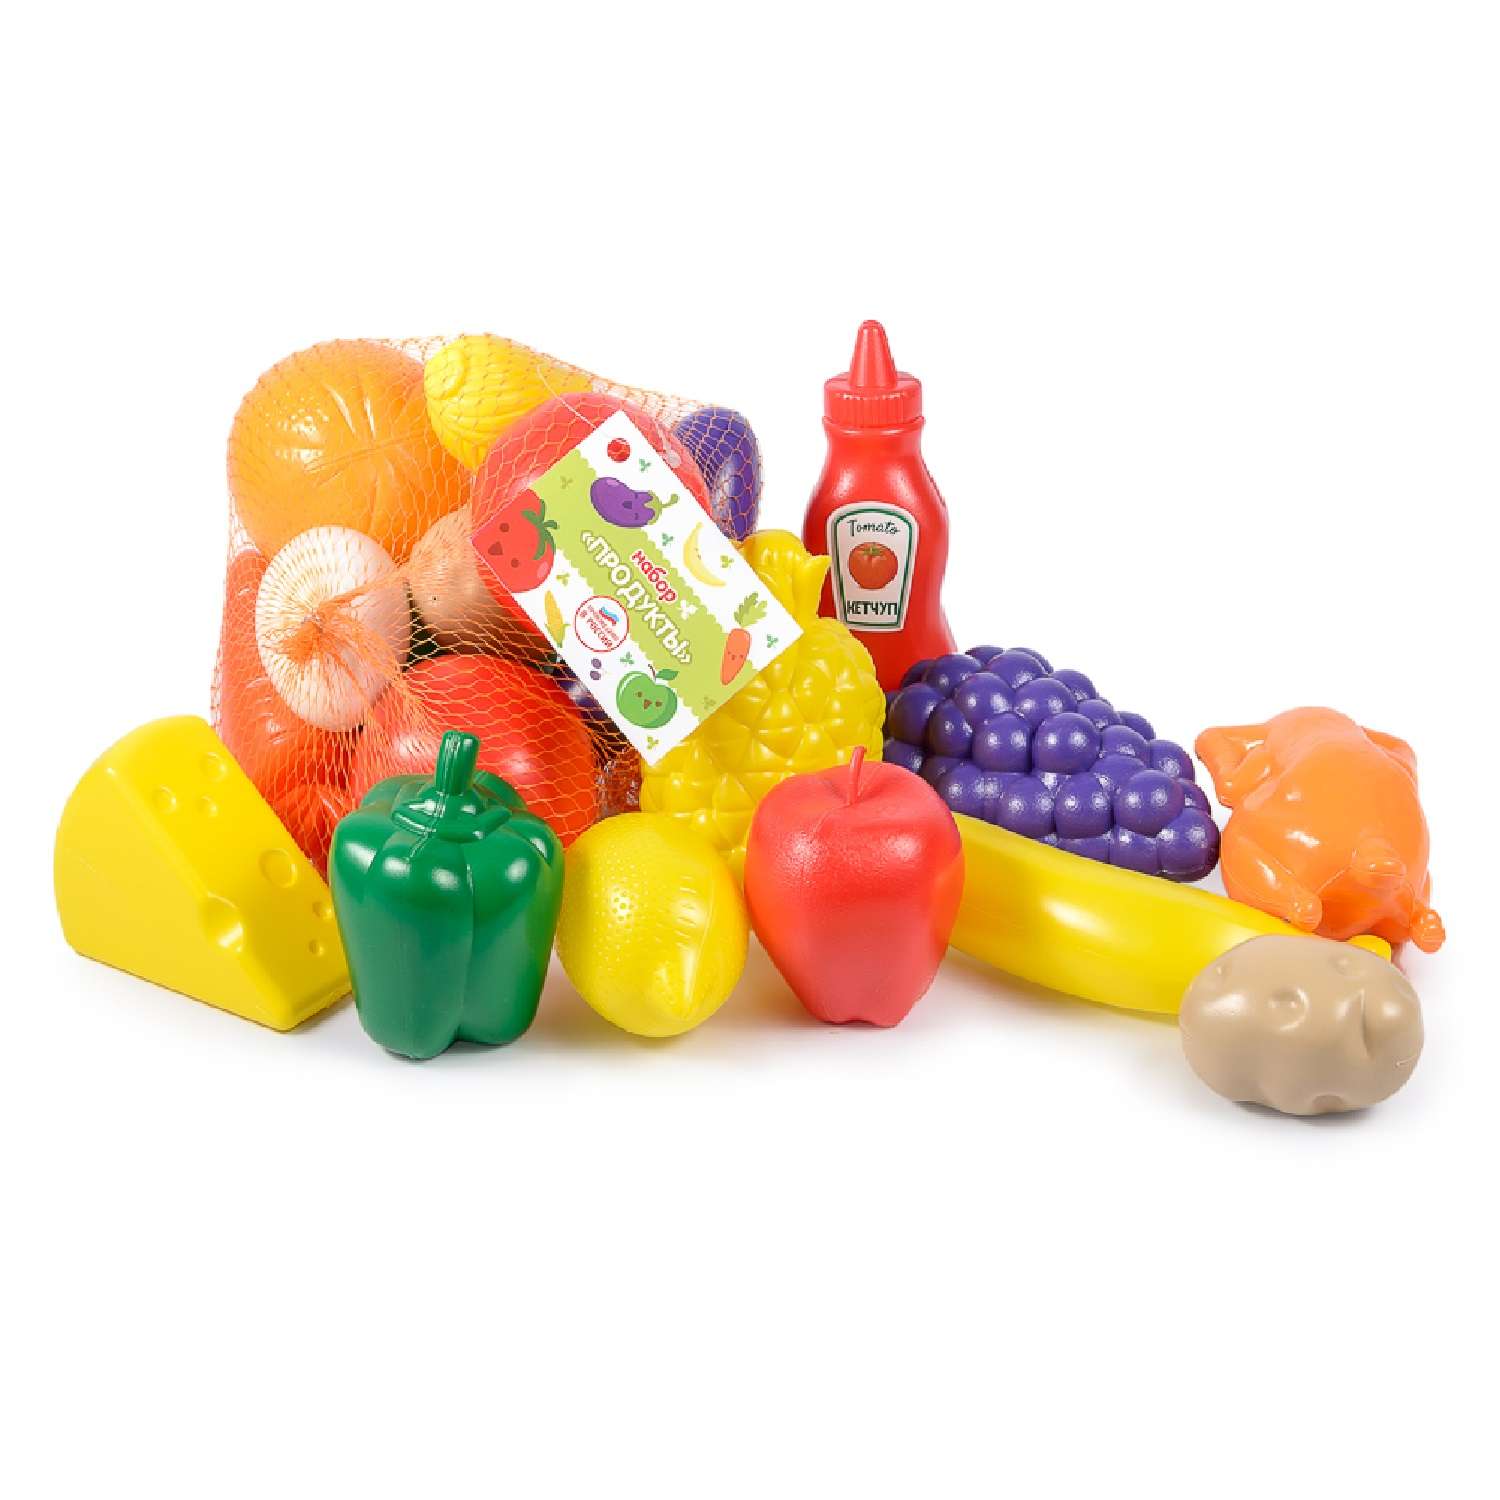 Игровой набор для кухни Green Plast игрушечные овощи фрукты продукты - фото 4